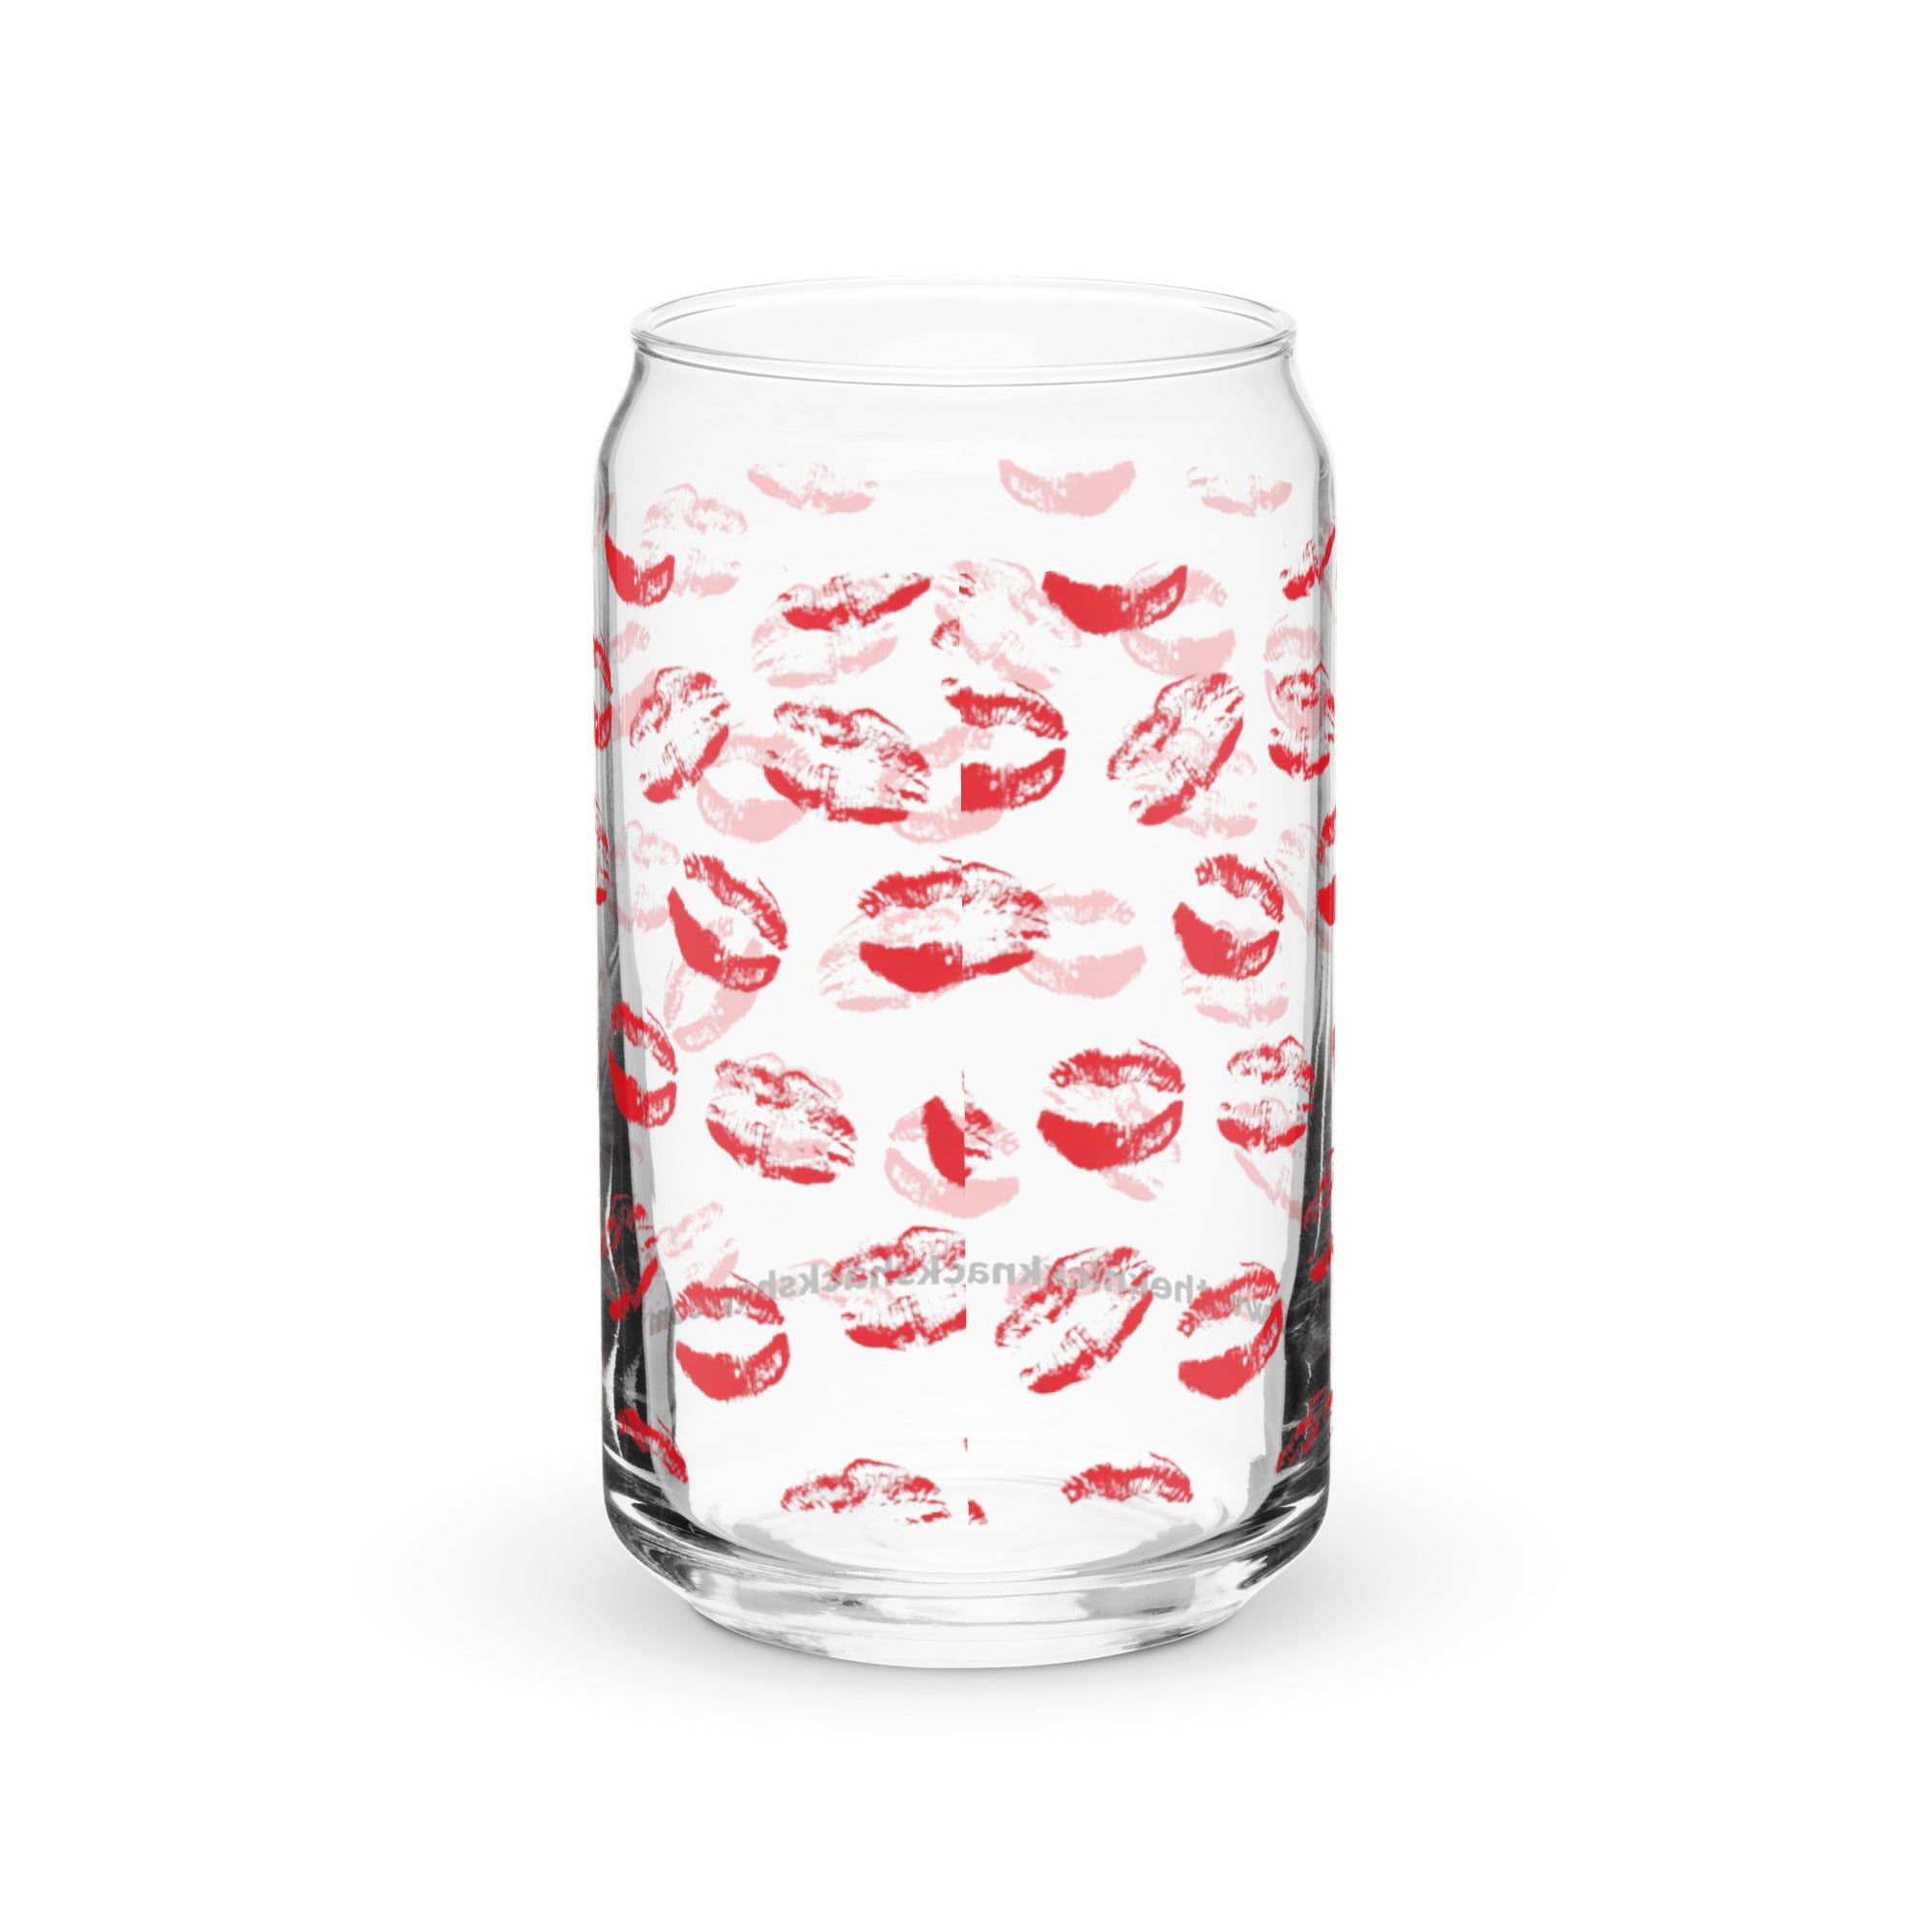 Vaso con forma de lata (16oz) - Lipstick Kisses